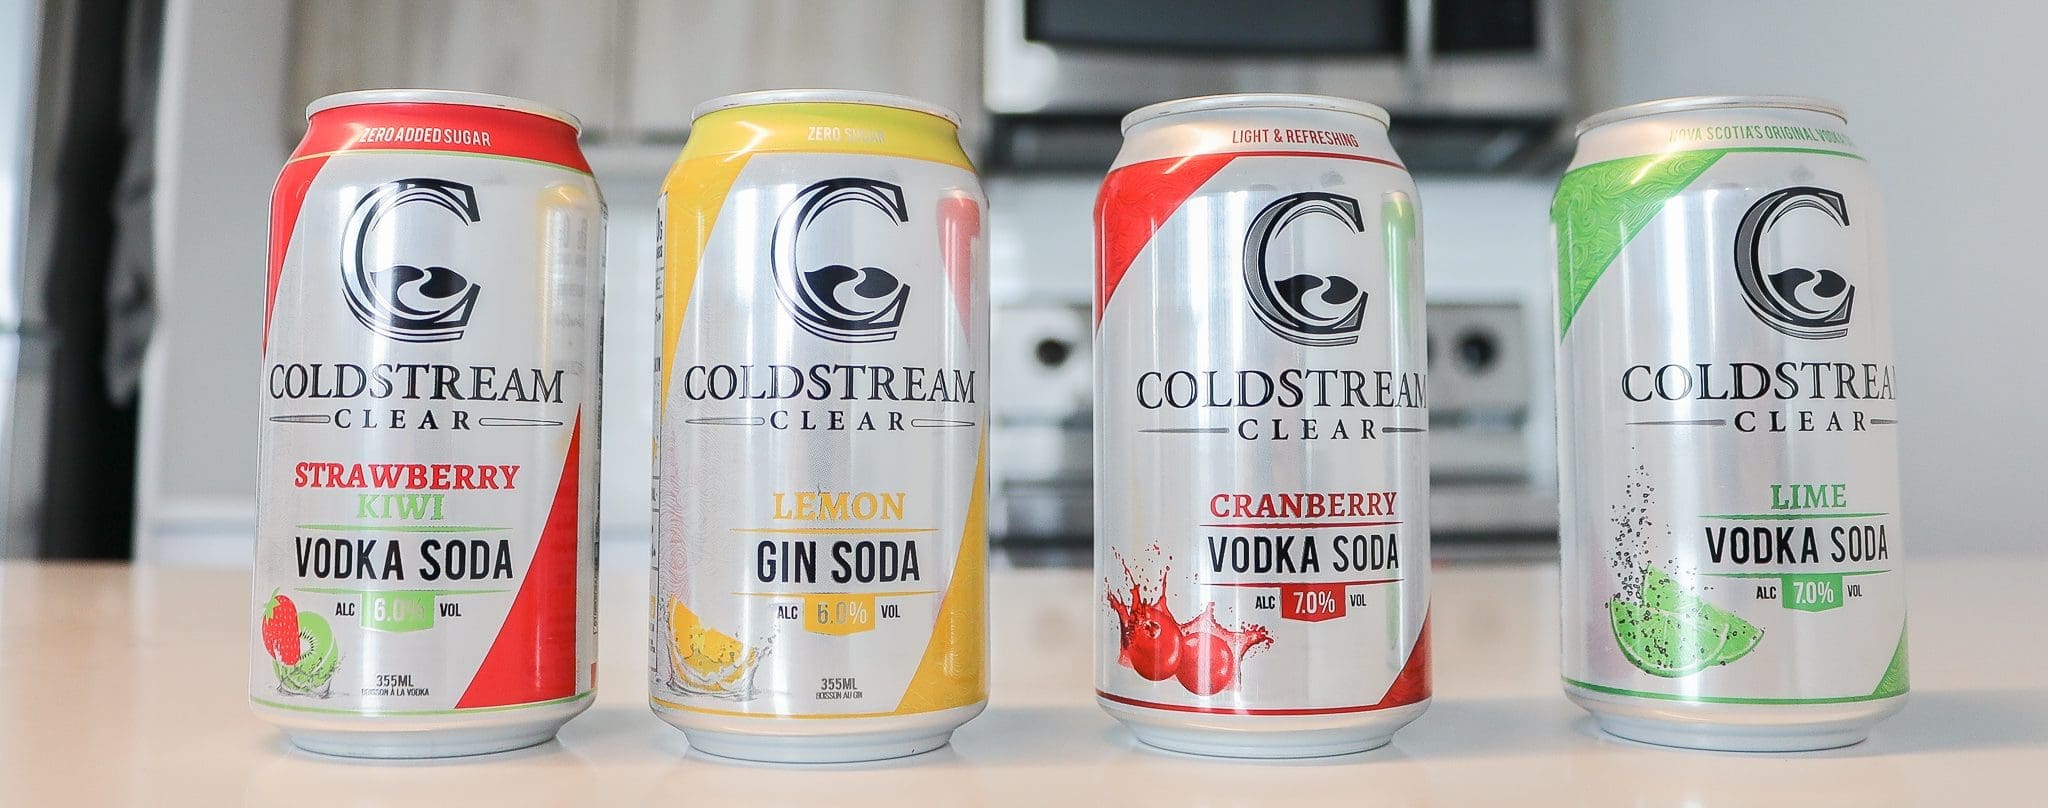 Coldstream Clear Vodka Soda